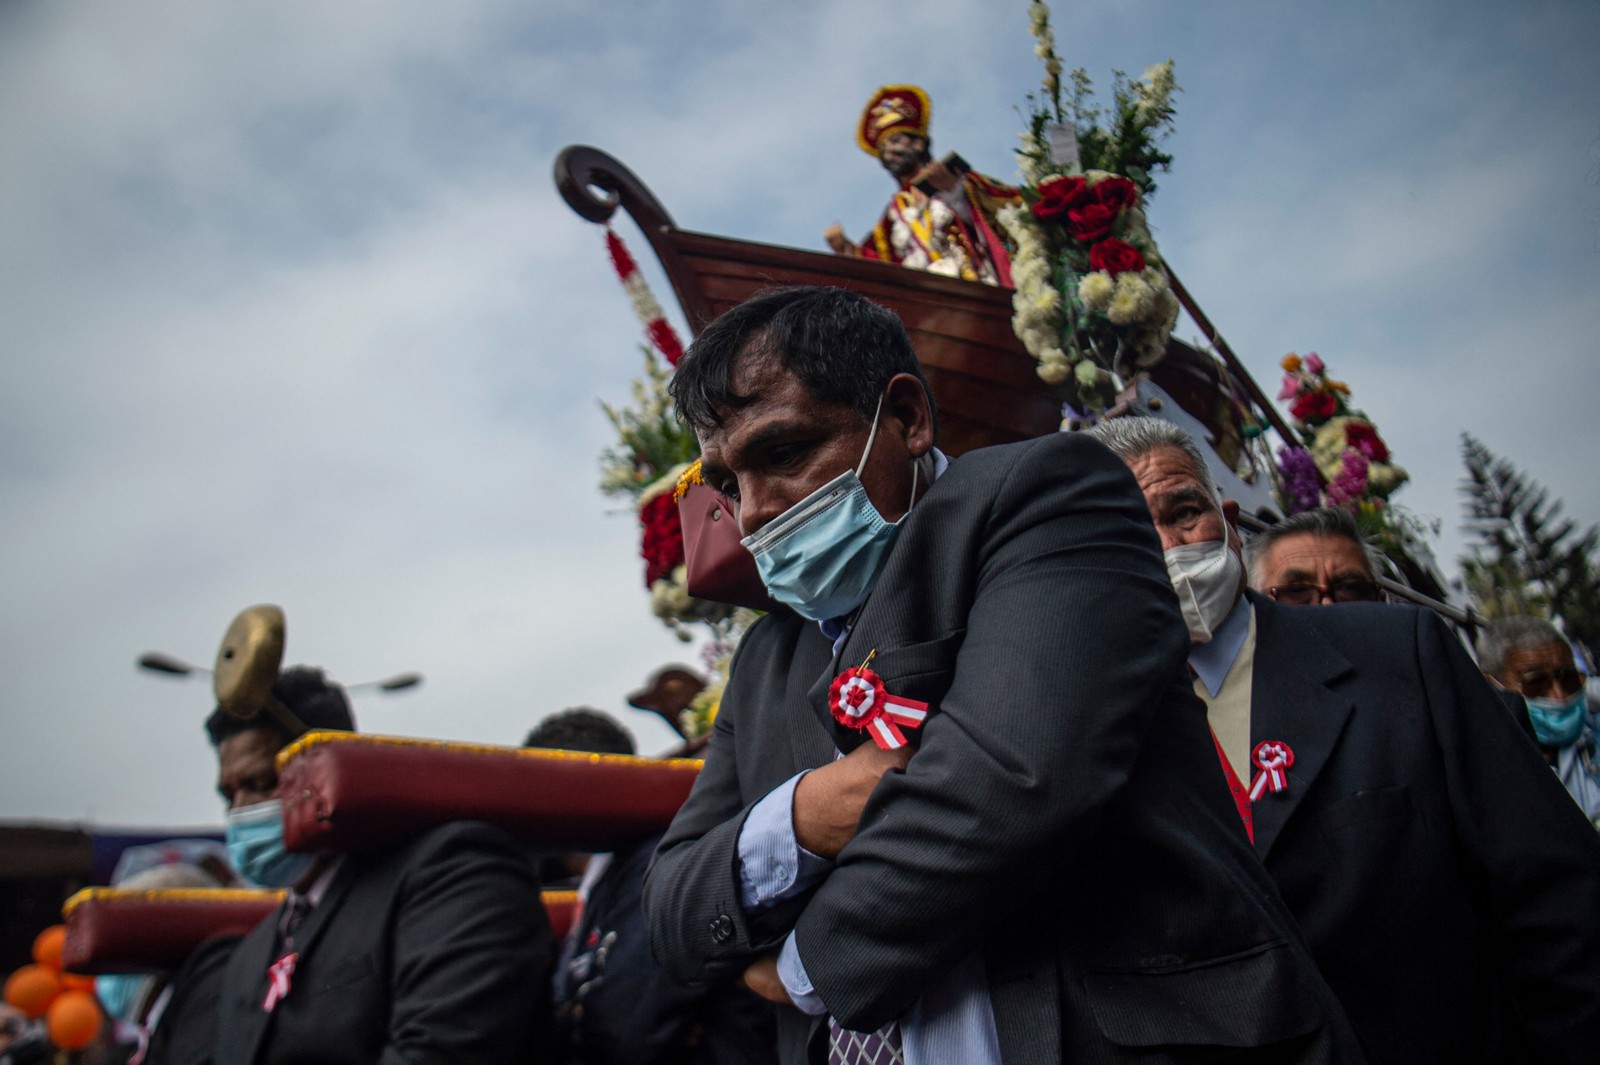 Homens carregam a imagem de São Pedro, padroeiro dos pescadores, durante uma procissão em Lima, Peru — Foto: ERNESTO BENAVIDES / AFP